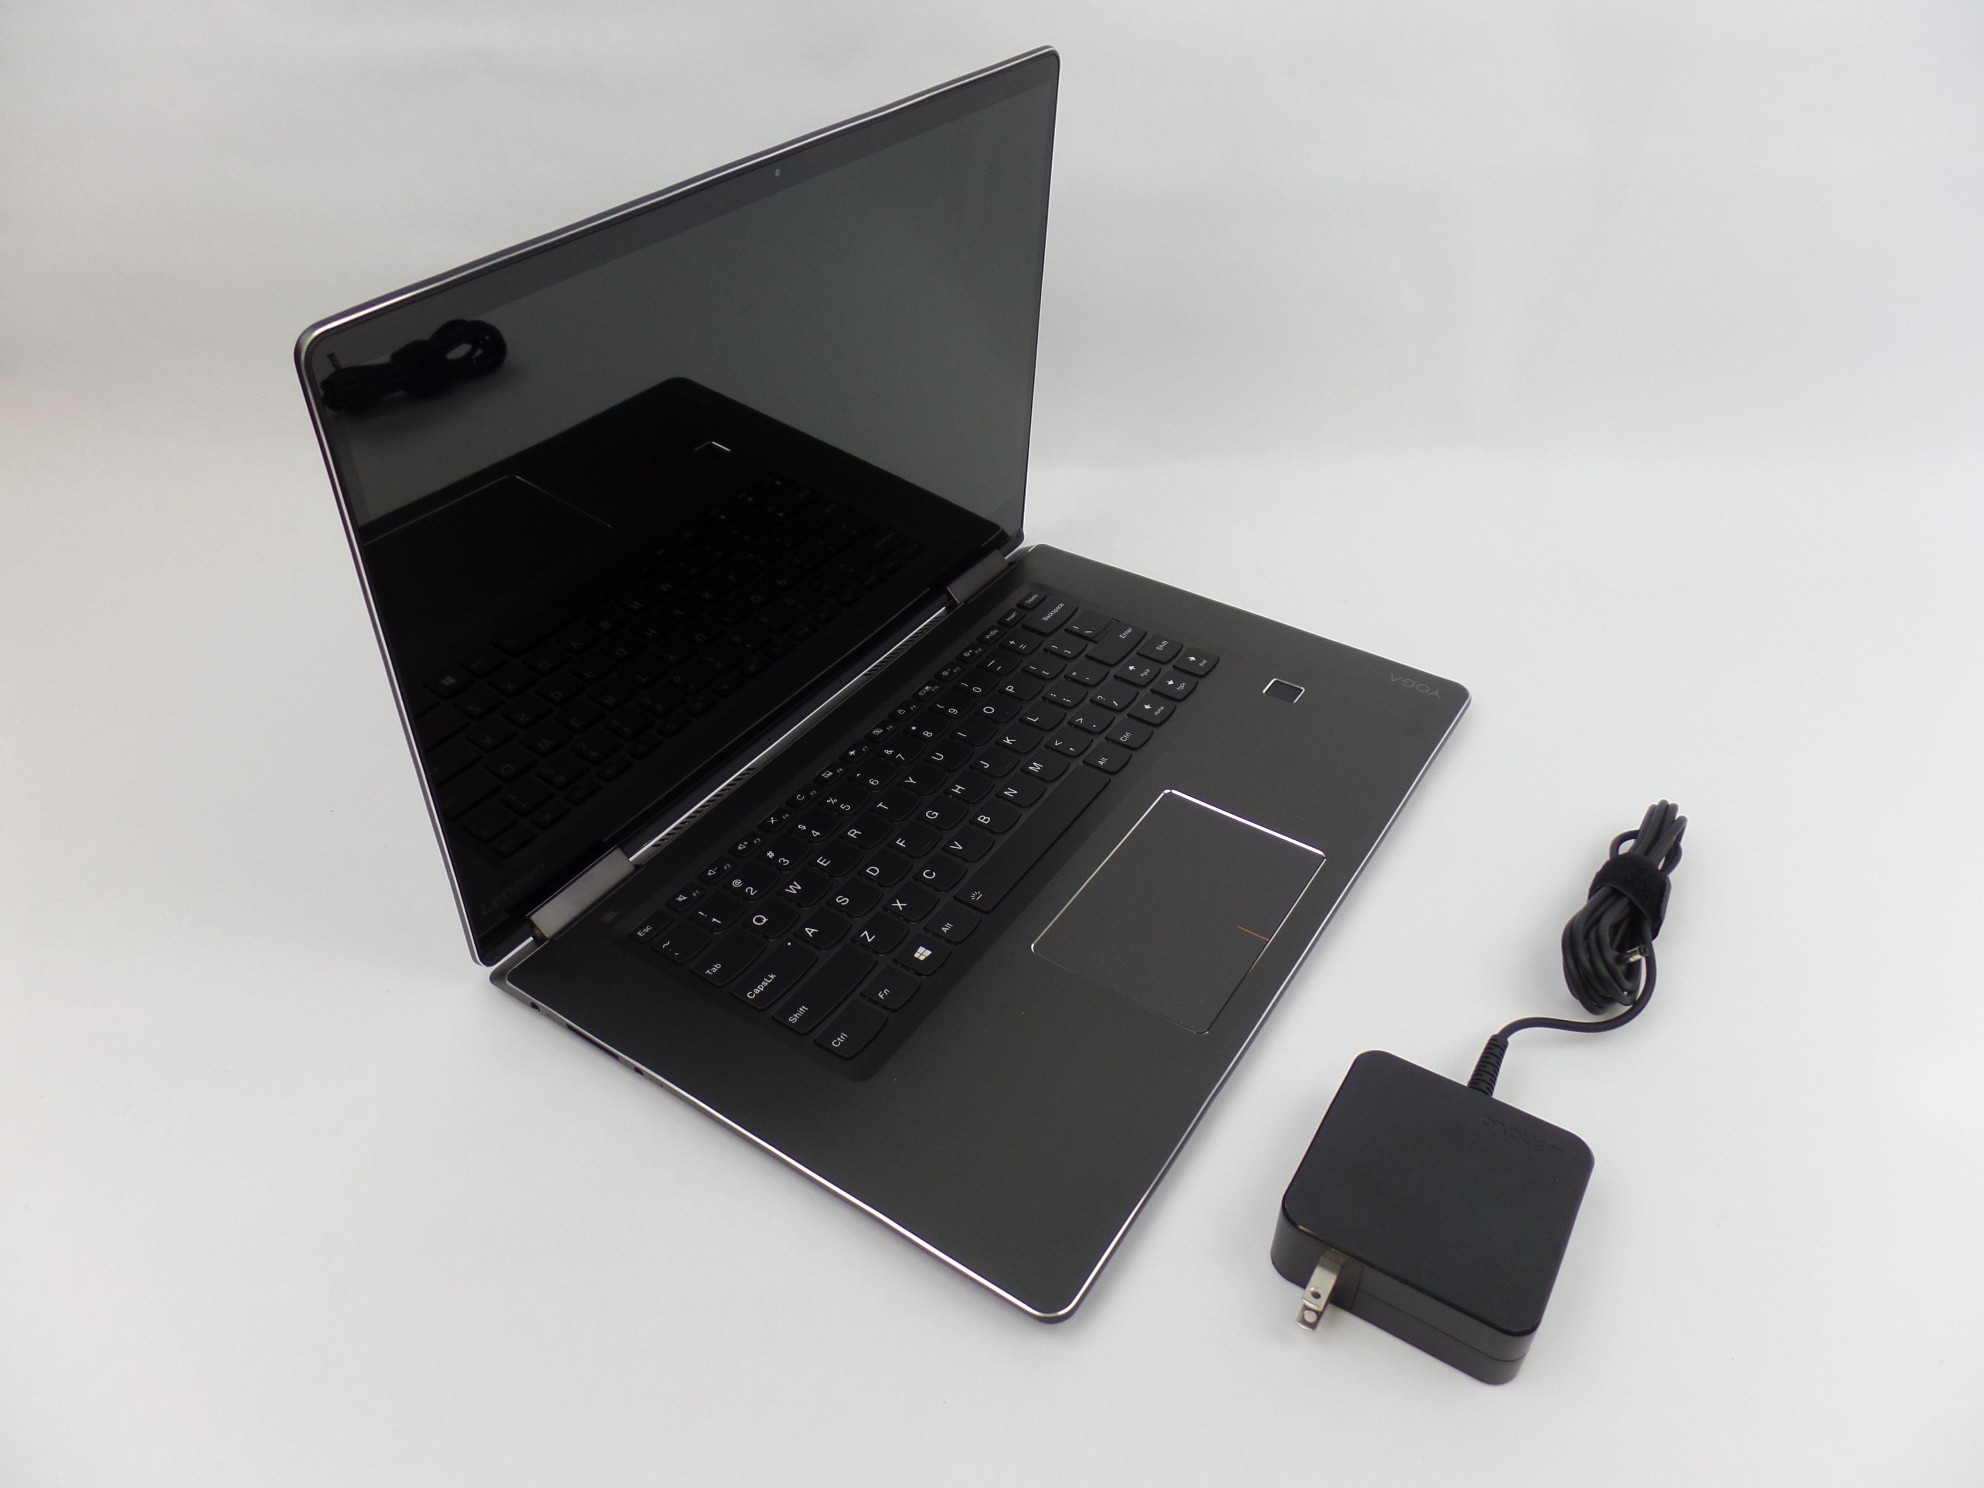 Lenovo Yoga 710-15IKB 15.6" FHD Touch i5-7200U 2.5GHz 8GB 256GB W10H 80V50010US